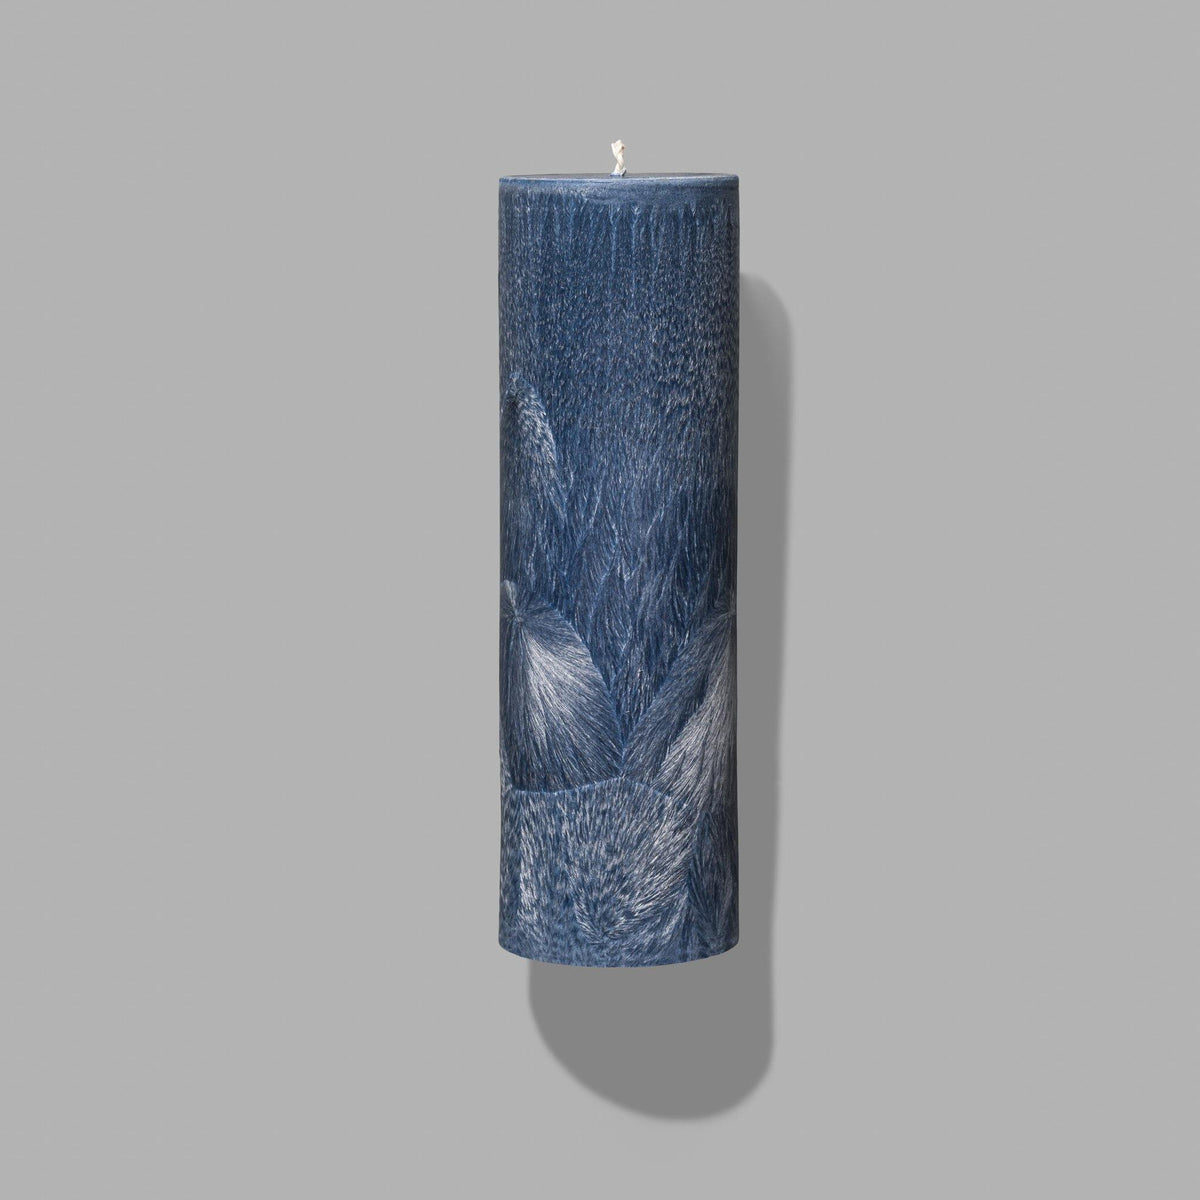 blue pillar candles